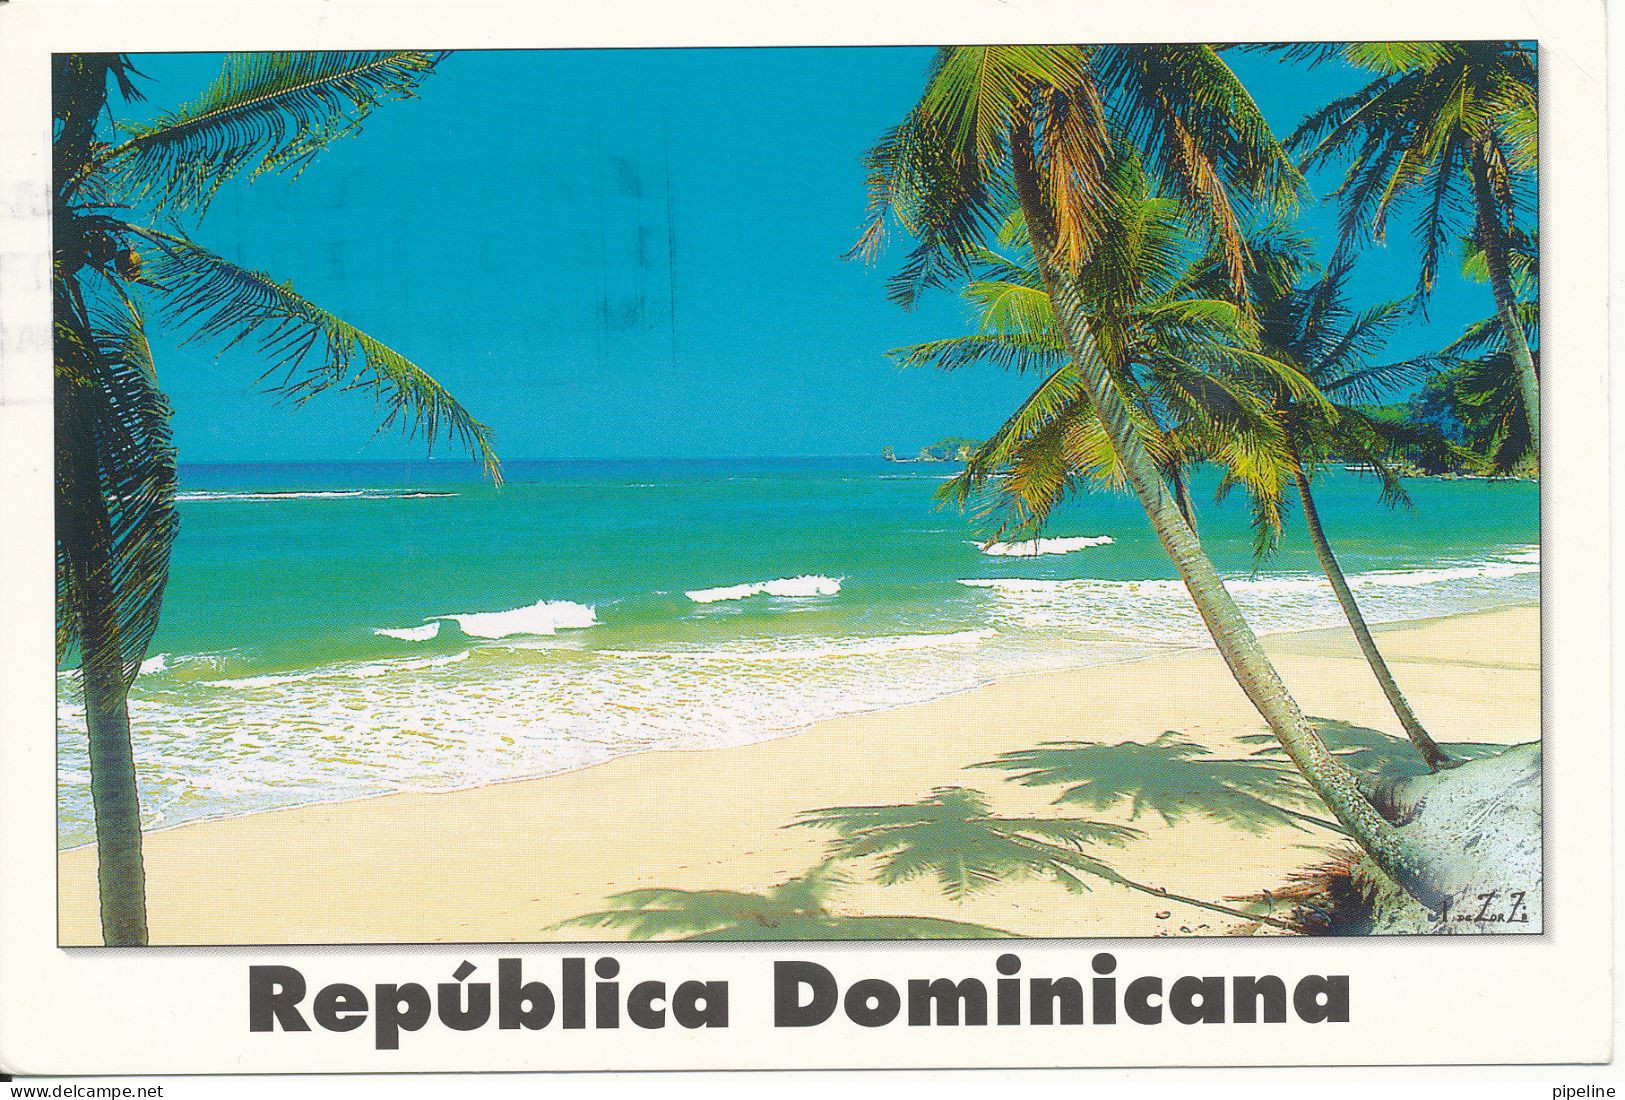 Dominicana Postcard Sent To Denmark 8-3-2001 (Playa Del Norte) - Dominikanische Rep.